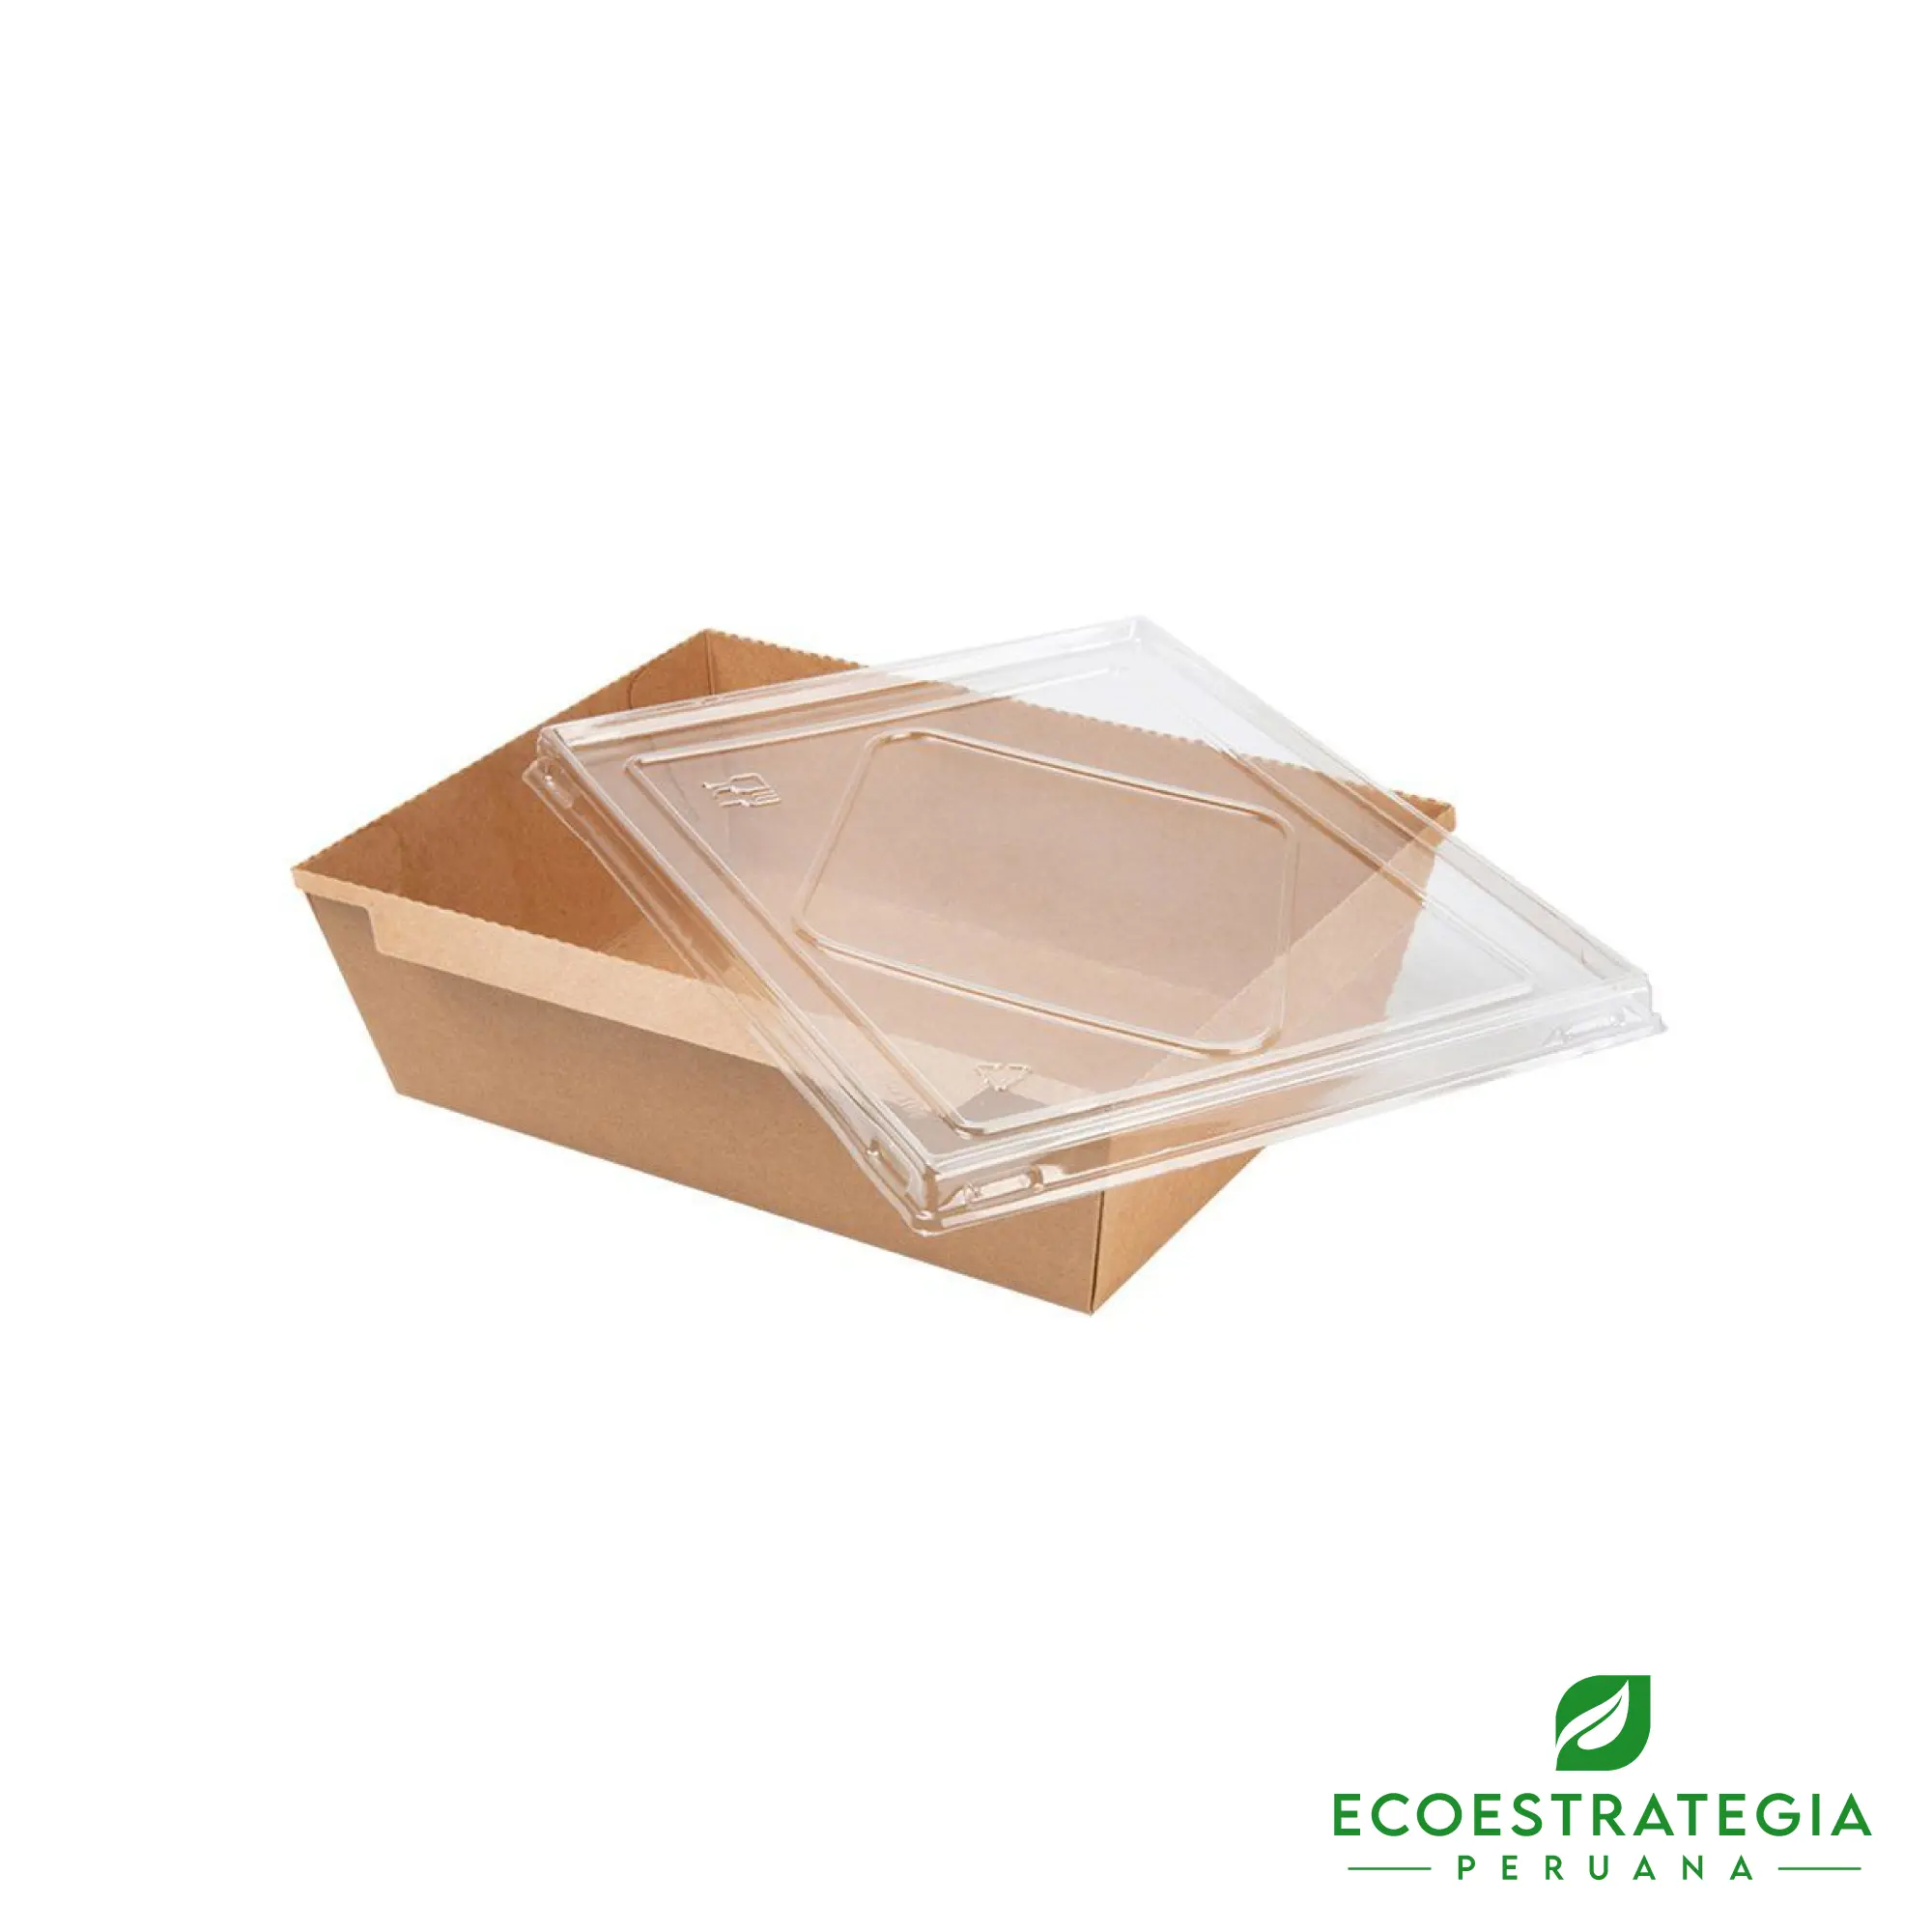 Este bandeja biodegradable de 900ml, es un producto de materiales biodegradables, hecho a base de cartón Kraft. Cotiza envases, empaques y tapers para comidas